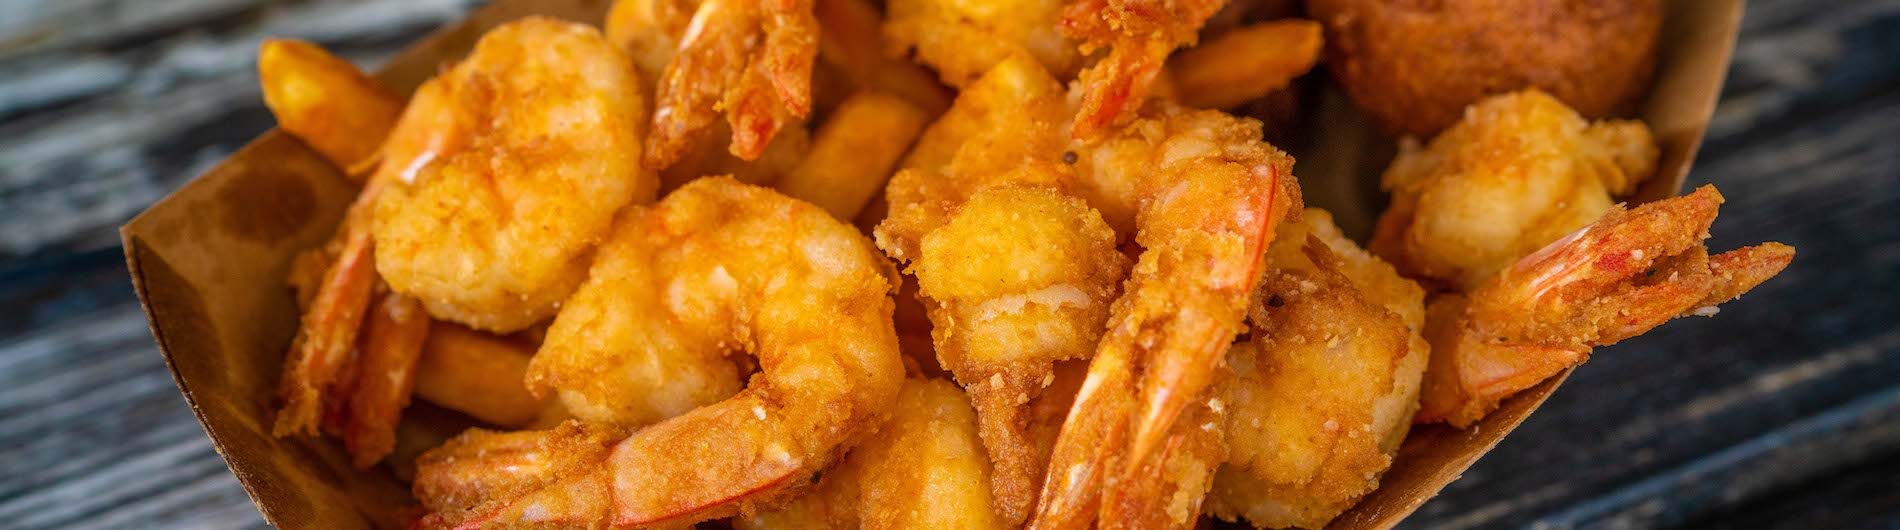 Timoti's Seafood Shak shrimp